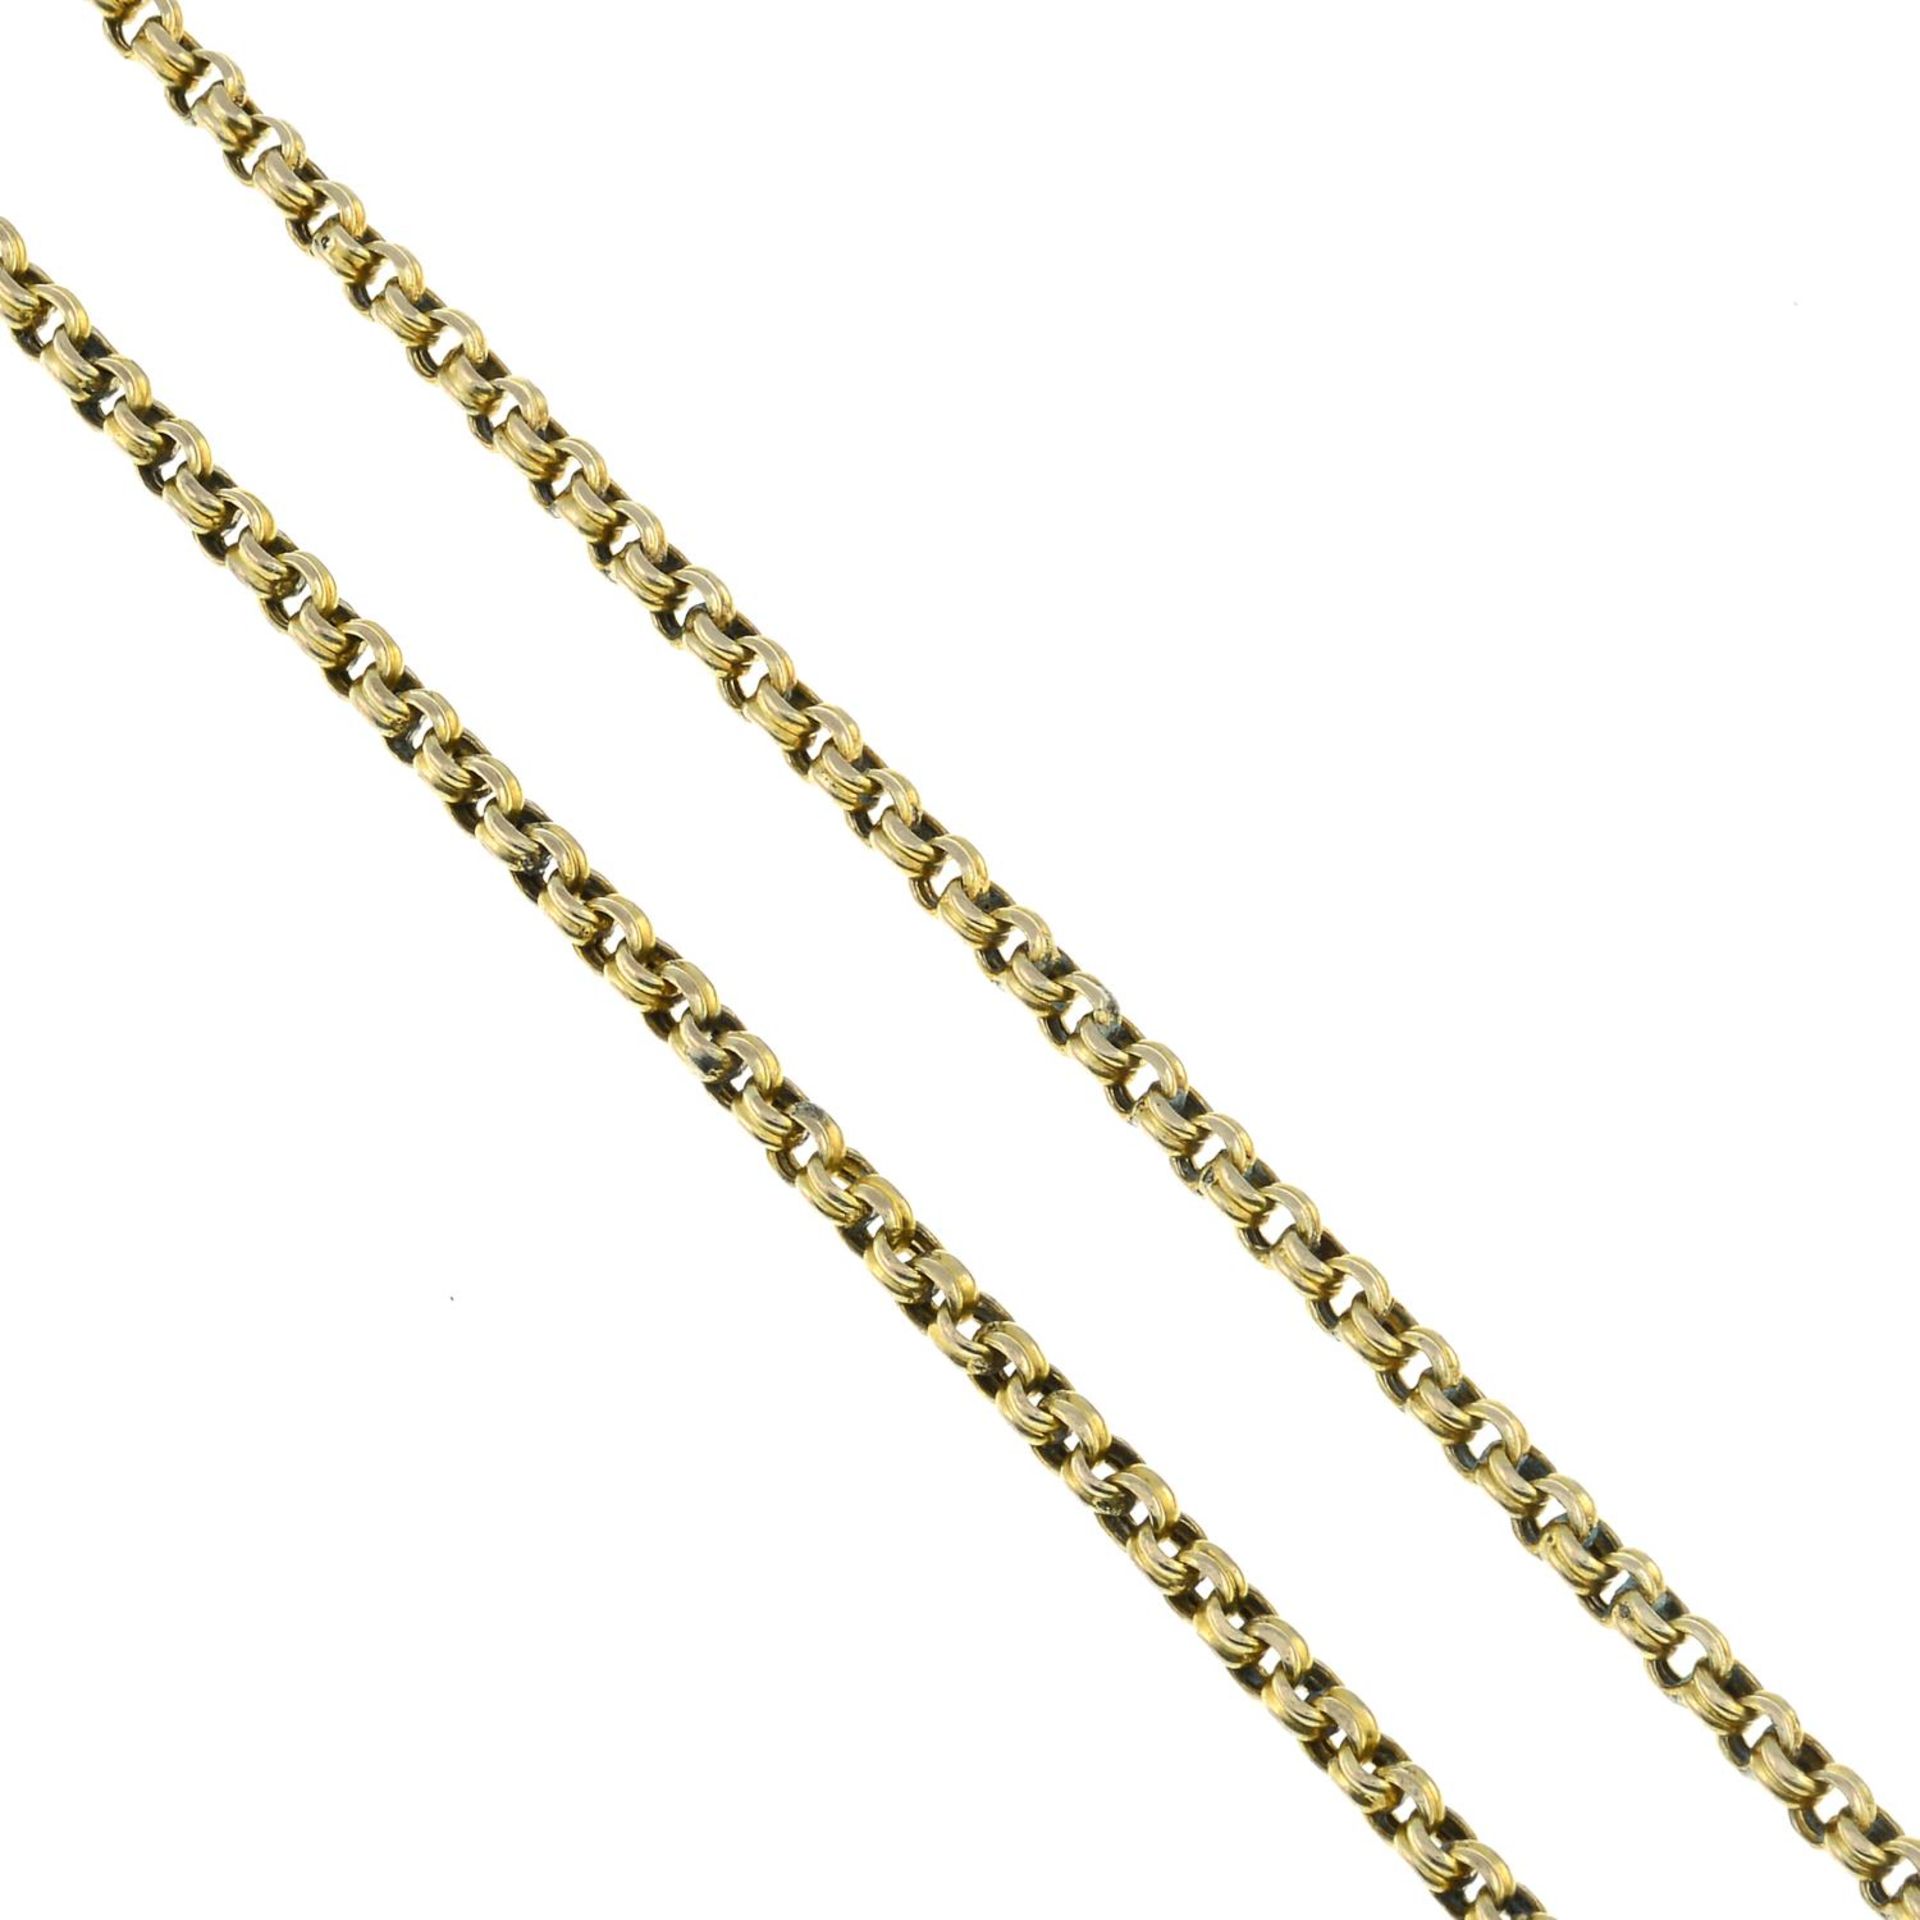 A longuard chain.Length 153cms.